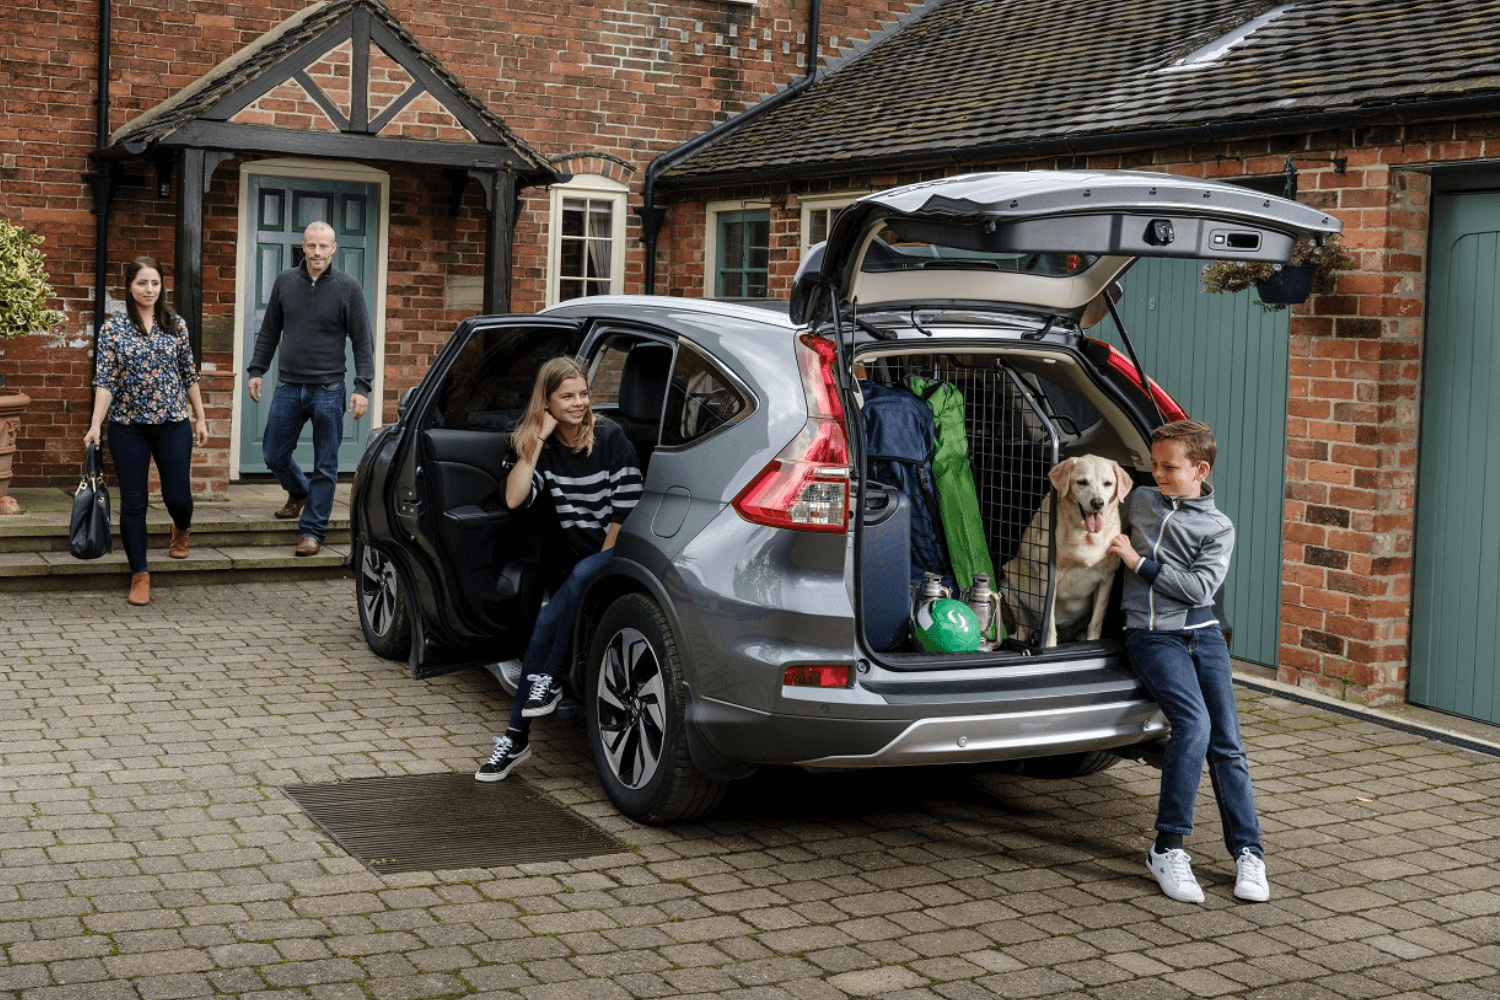 Für den Urlaub mit Hund hat sich die Familie im Foto entschieden, den Hund mit Hundegitter und Kofferraumteiler von Travall im Auto zu sichern. © Travall